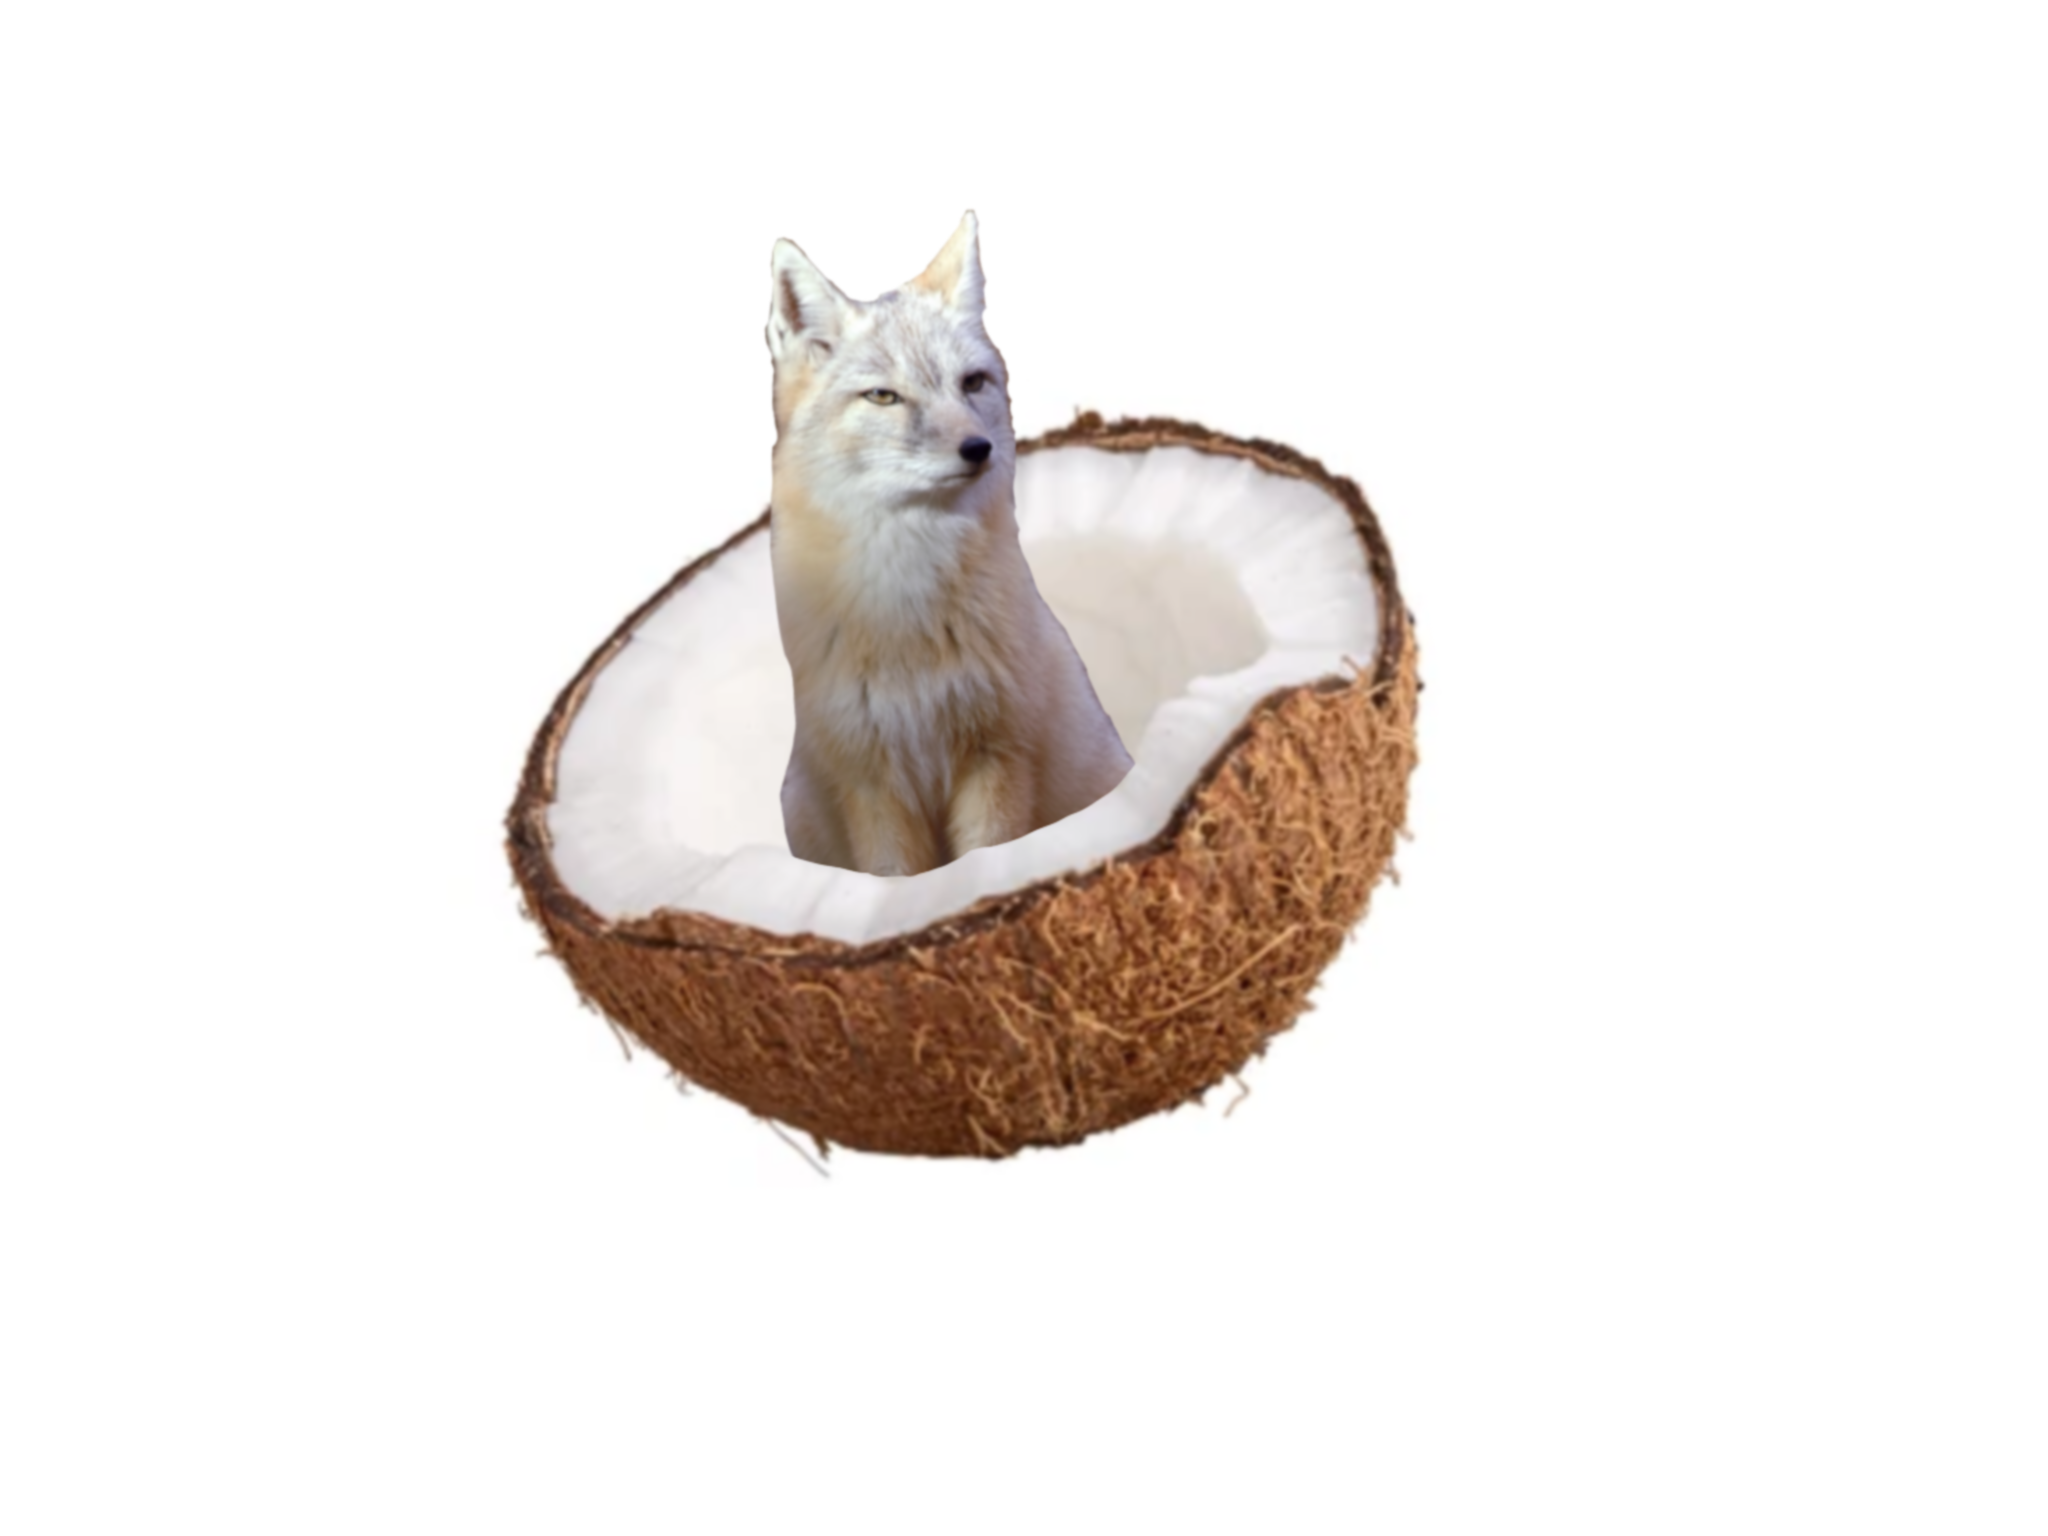 CoconutFox's Profile Picture on PvPRP